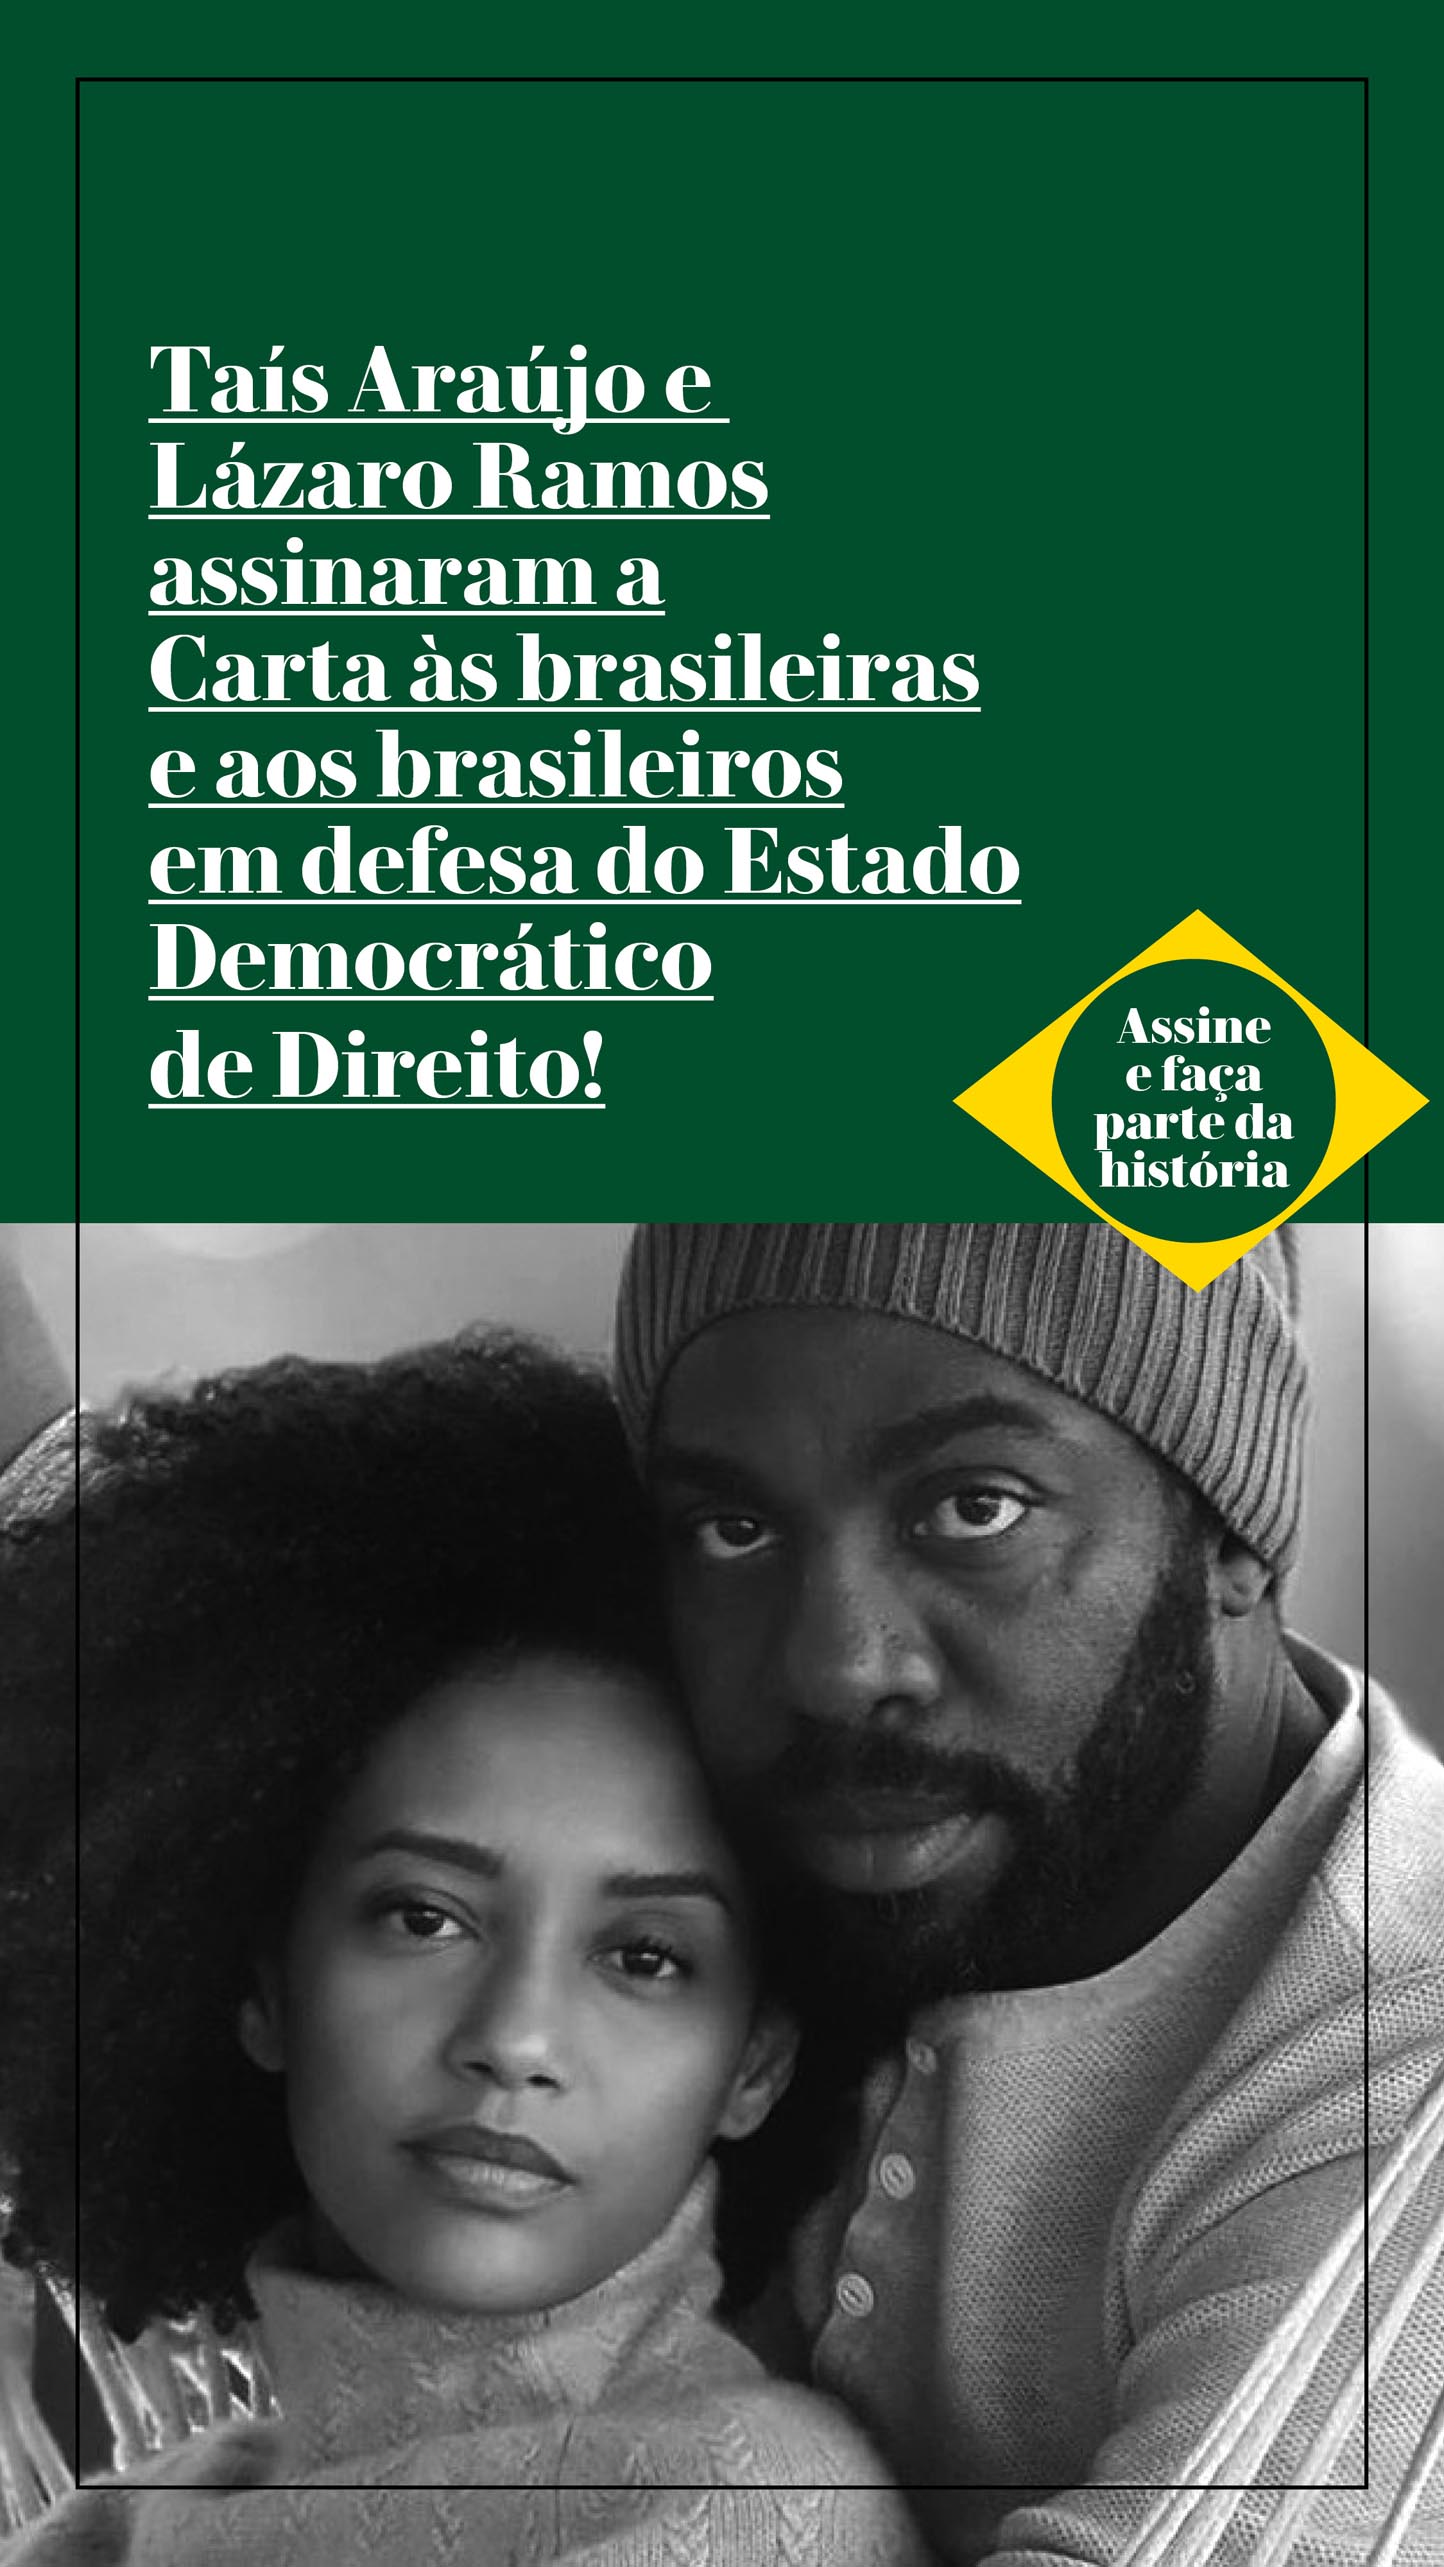 Taís Araújo e Lázaro Ramos assinaram a Carta às brasileiras e aos brasileiros em defesa do Estado Democrático de Direito!